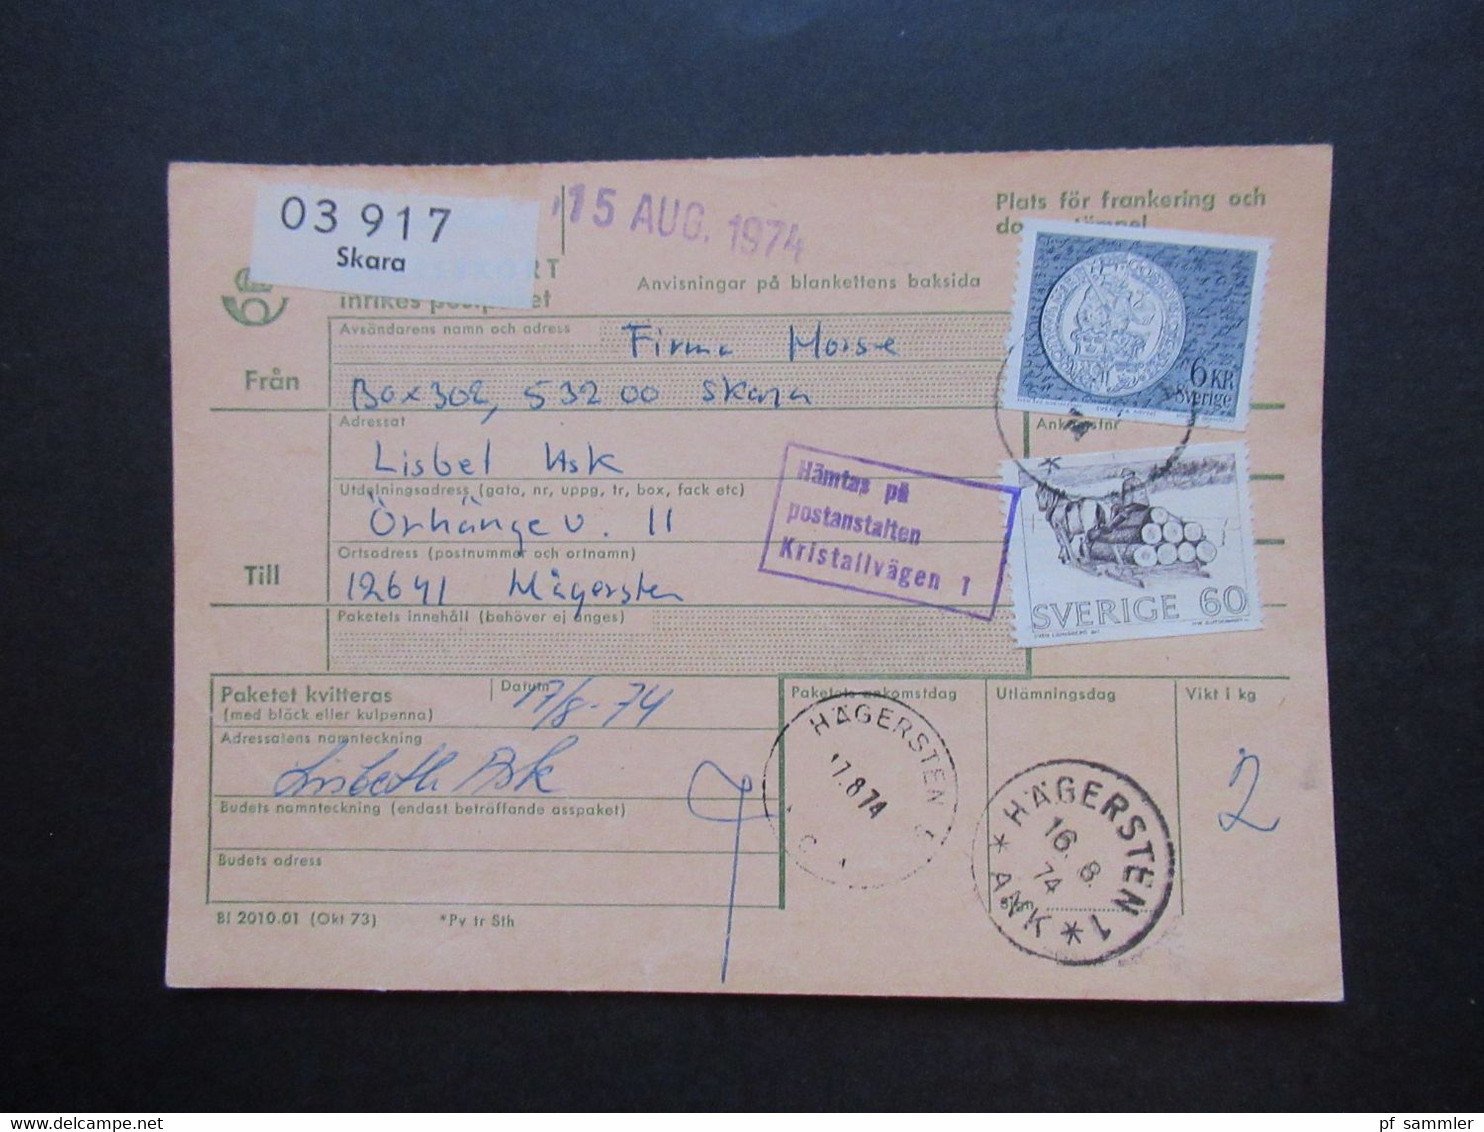 Schweden 1970 / 74 Paketkarten 7 Stück Davon 2x Nach England Violetter Stempel Hämtas Pä Postanstalten Kristallvägen 1 - Covers & Documents